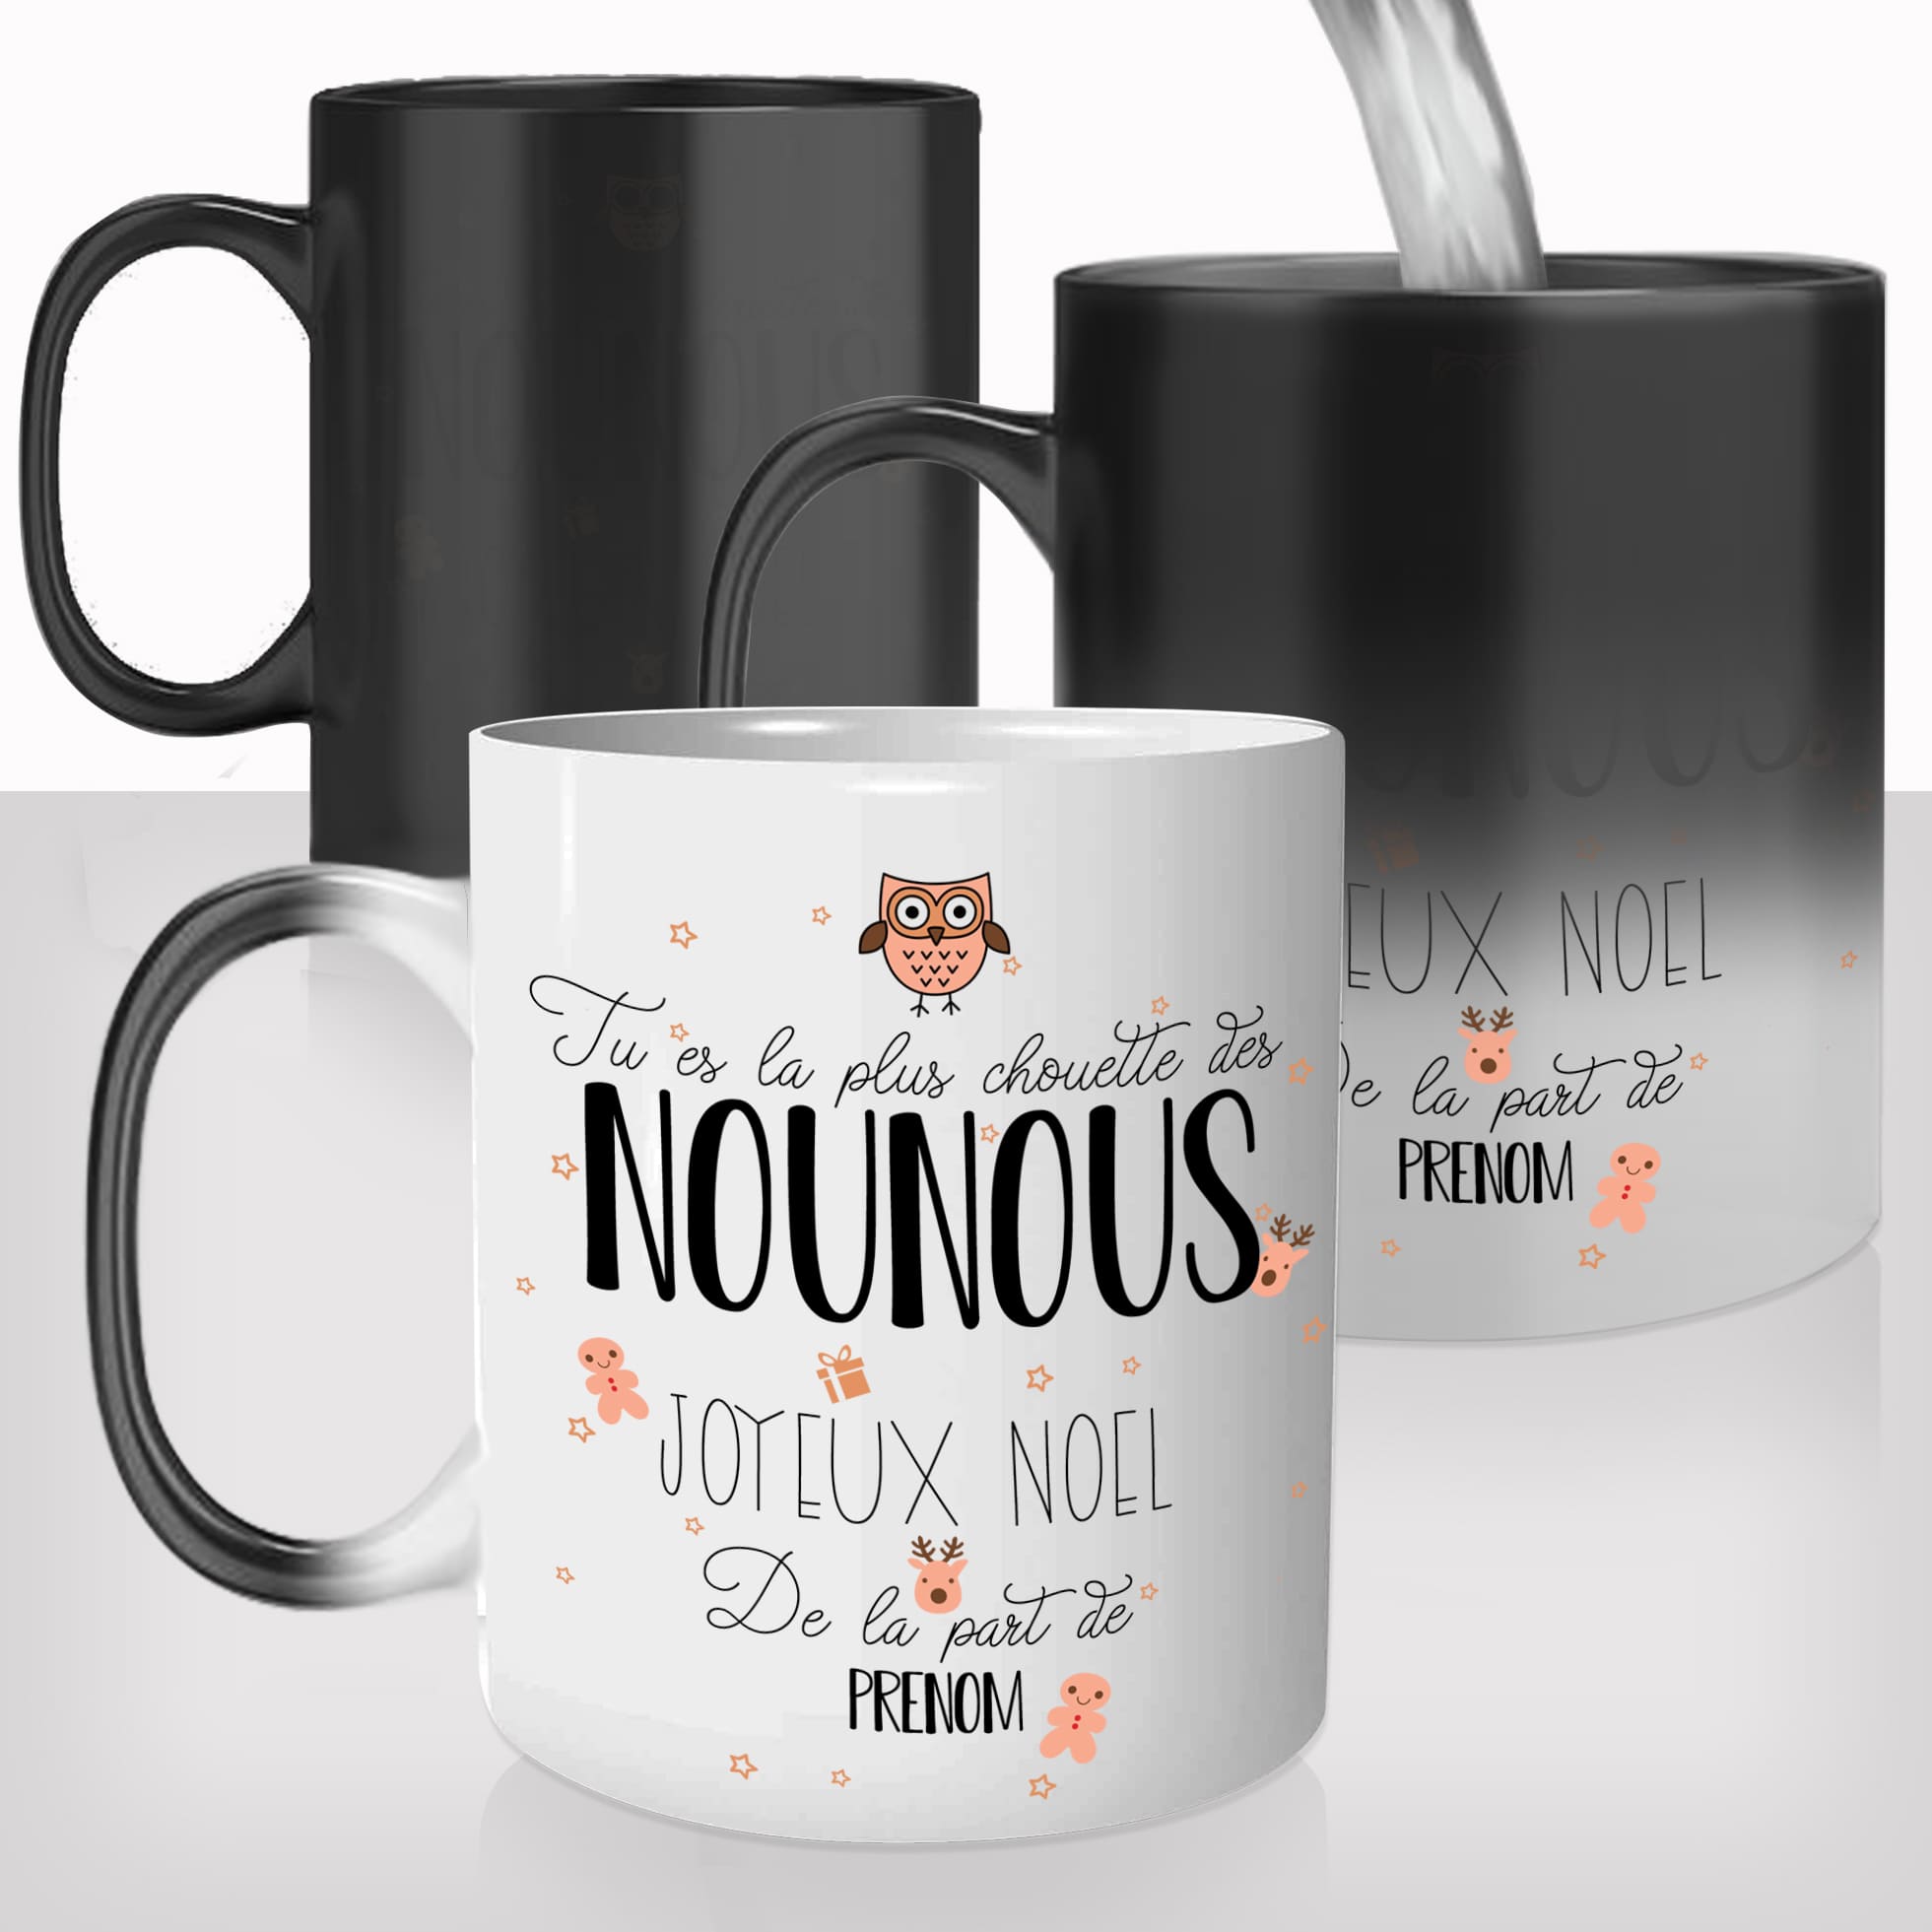 mug-magique-tasse-magic-thermo-reactif-chauffant-metier-chouette-nounou-merci-joyeux-noel-prenom-personnalisable-nourrisse-cadeau